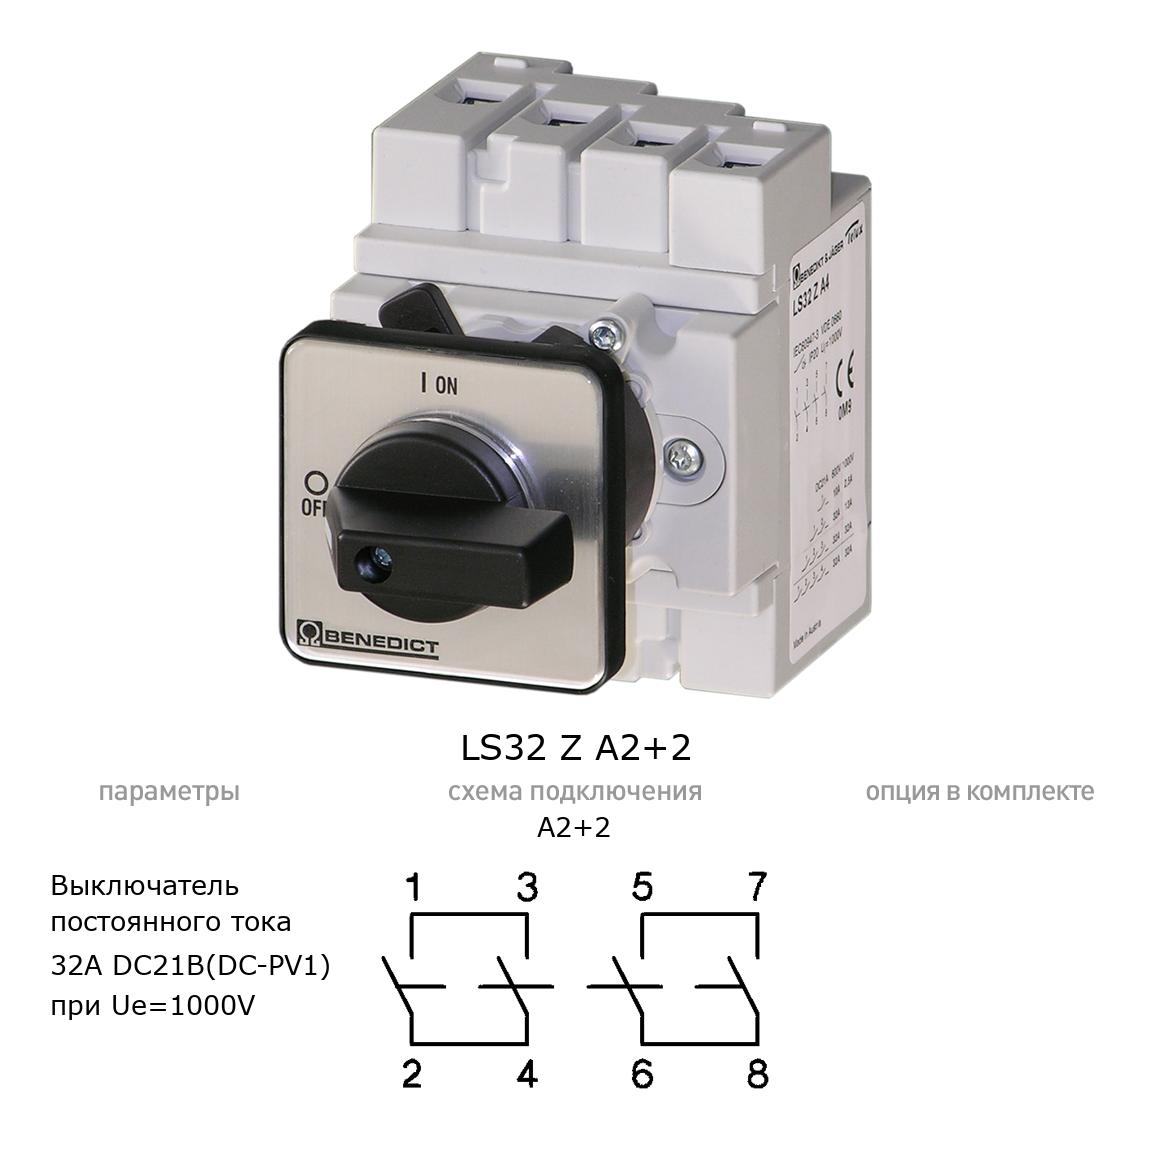 Кулачковый переключатель для постоянного тока (DC) LS32 Z A2+2 BENEDICT